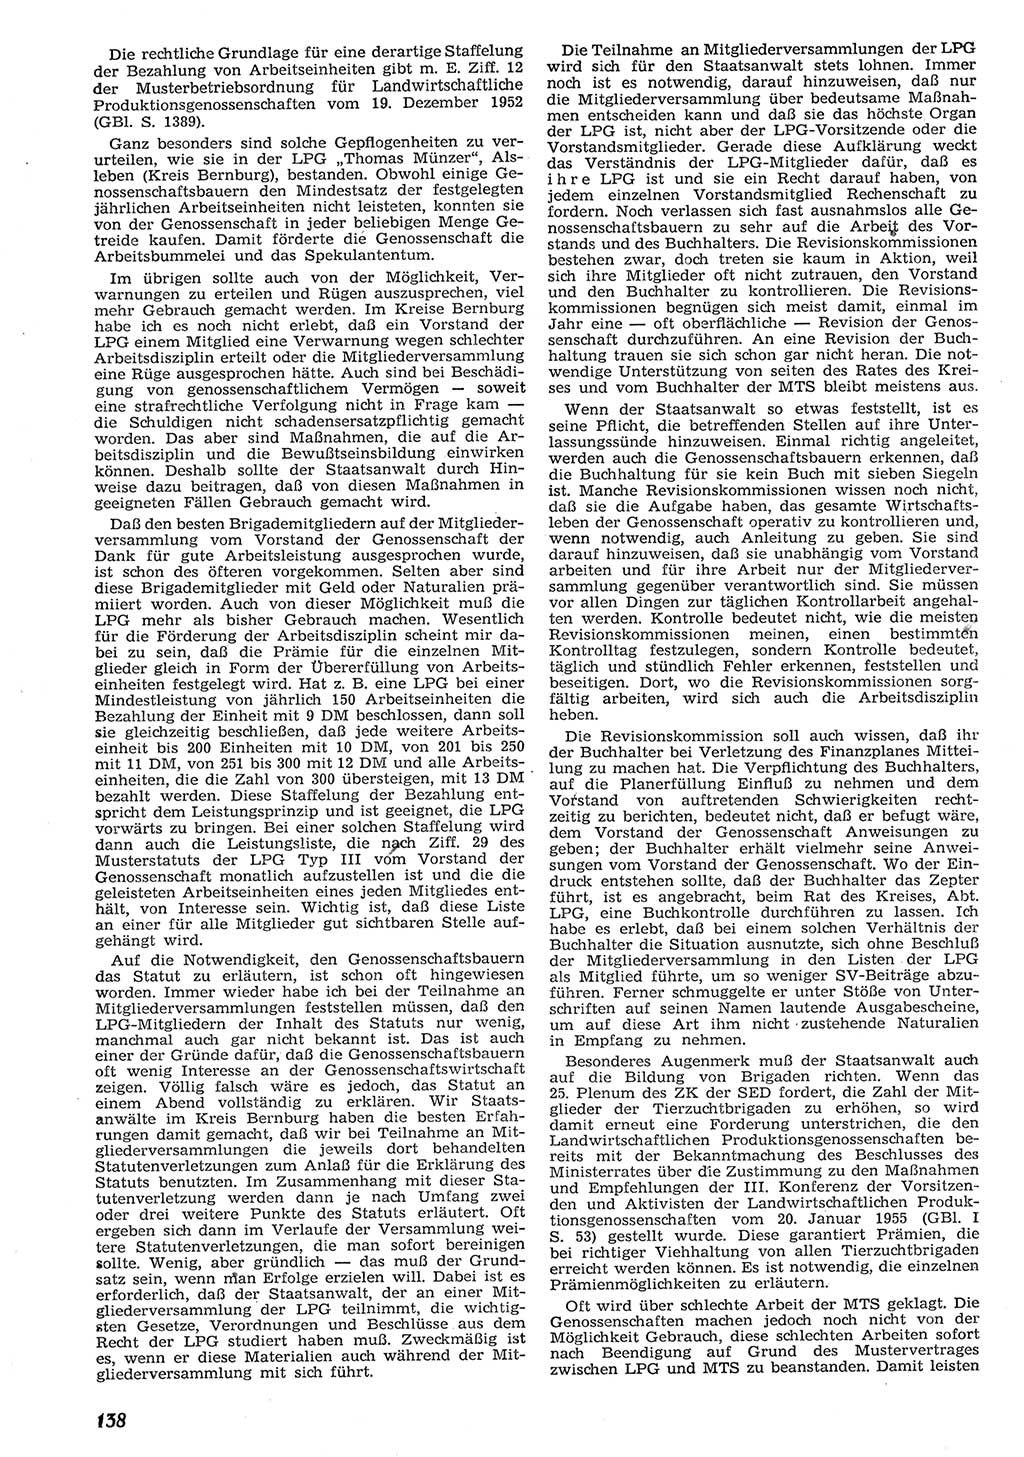 Neue Justiz (NJ), Zeitschrift für Recht und Rechtswissenschaft [Deutsche Demokratische Republik (DDR)], 10. Jahrgang 1956, Seite 138 (NJ DDR 1956, S. 138)